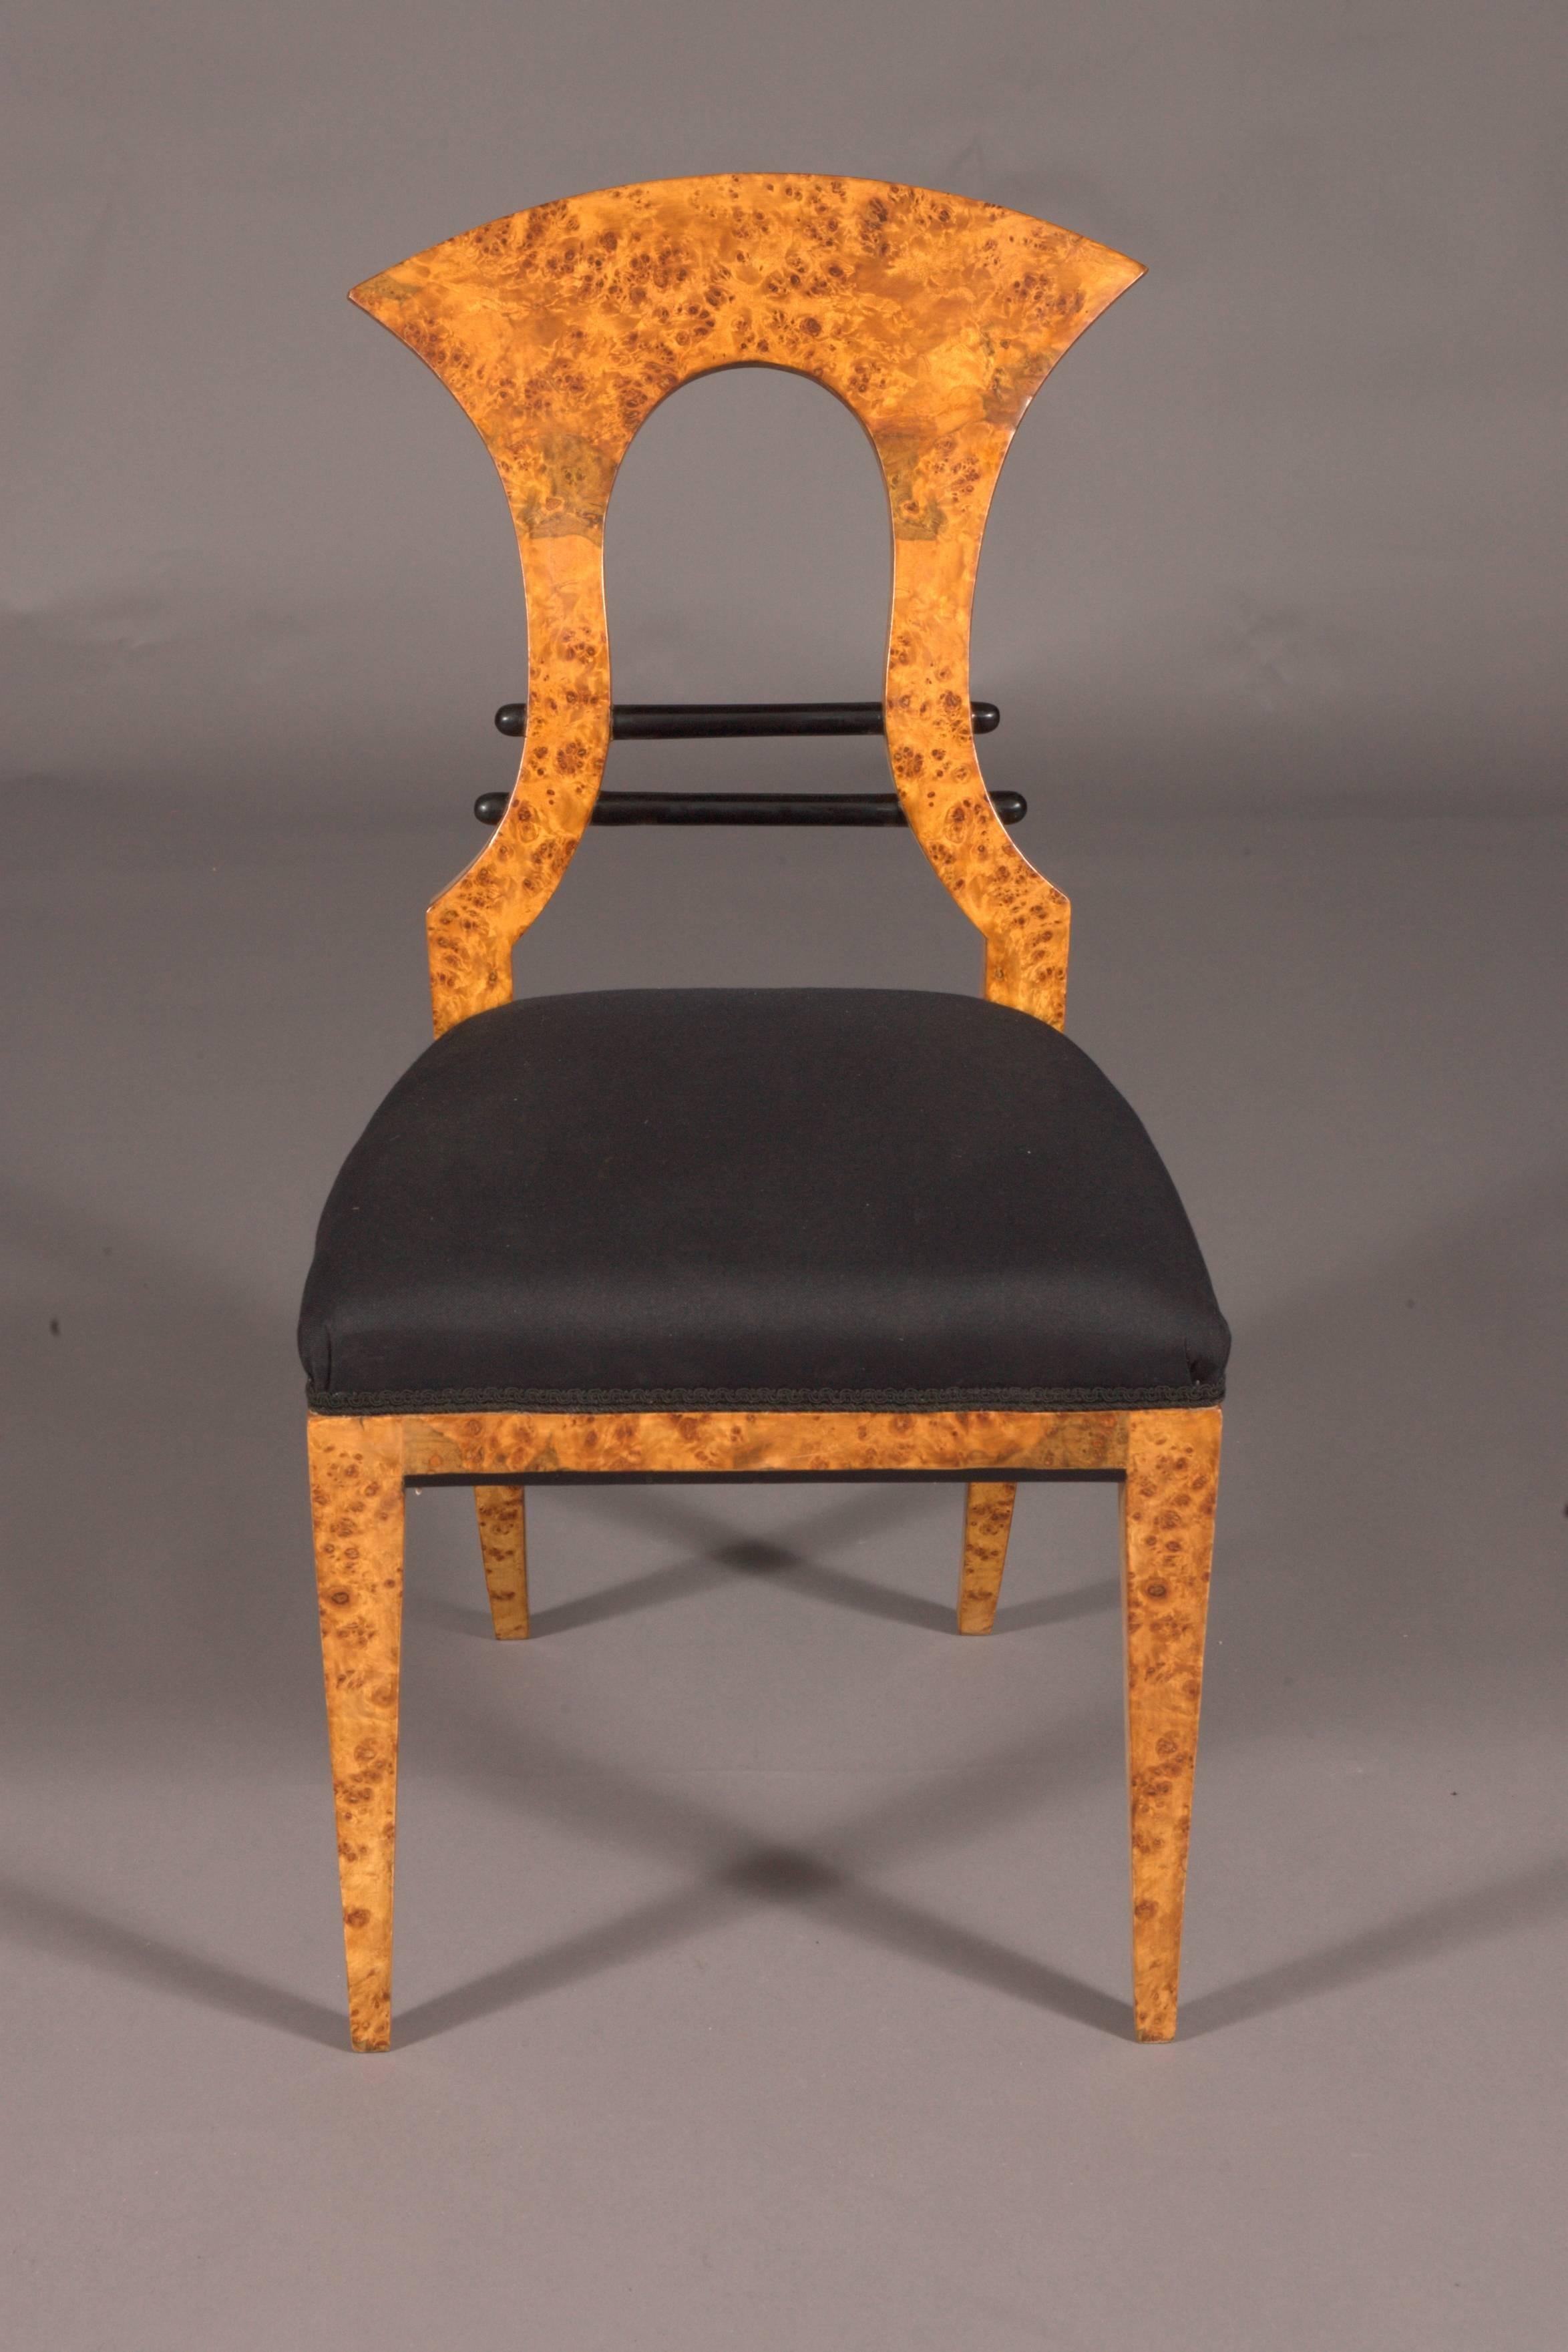 20th Century Vienna Biedermeier Chair after antique Josef Danhauser birdie maple veneer